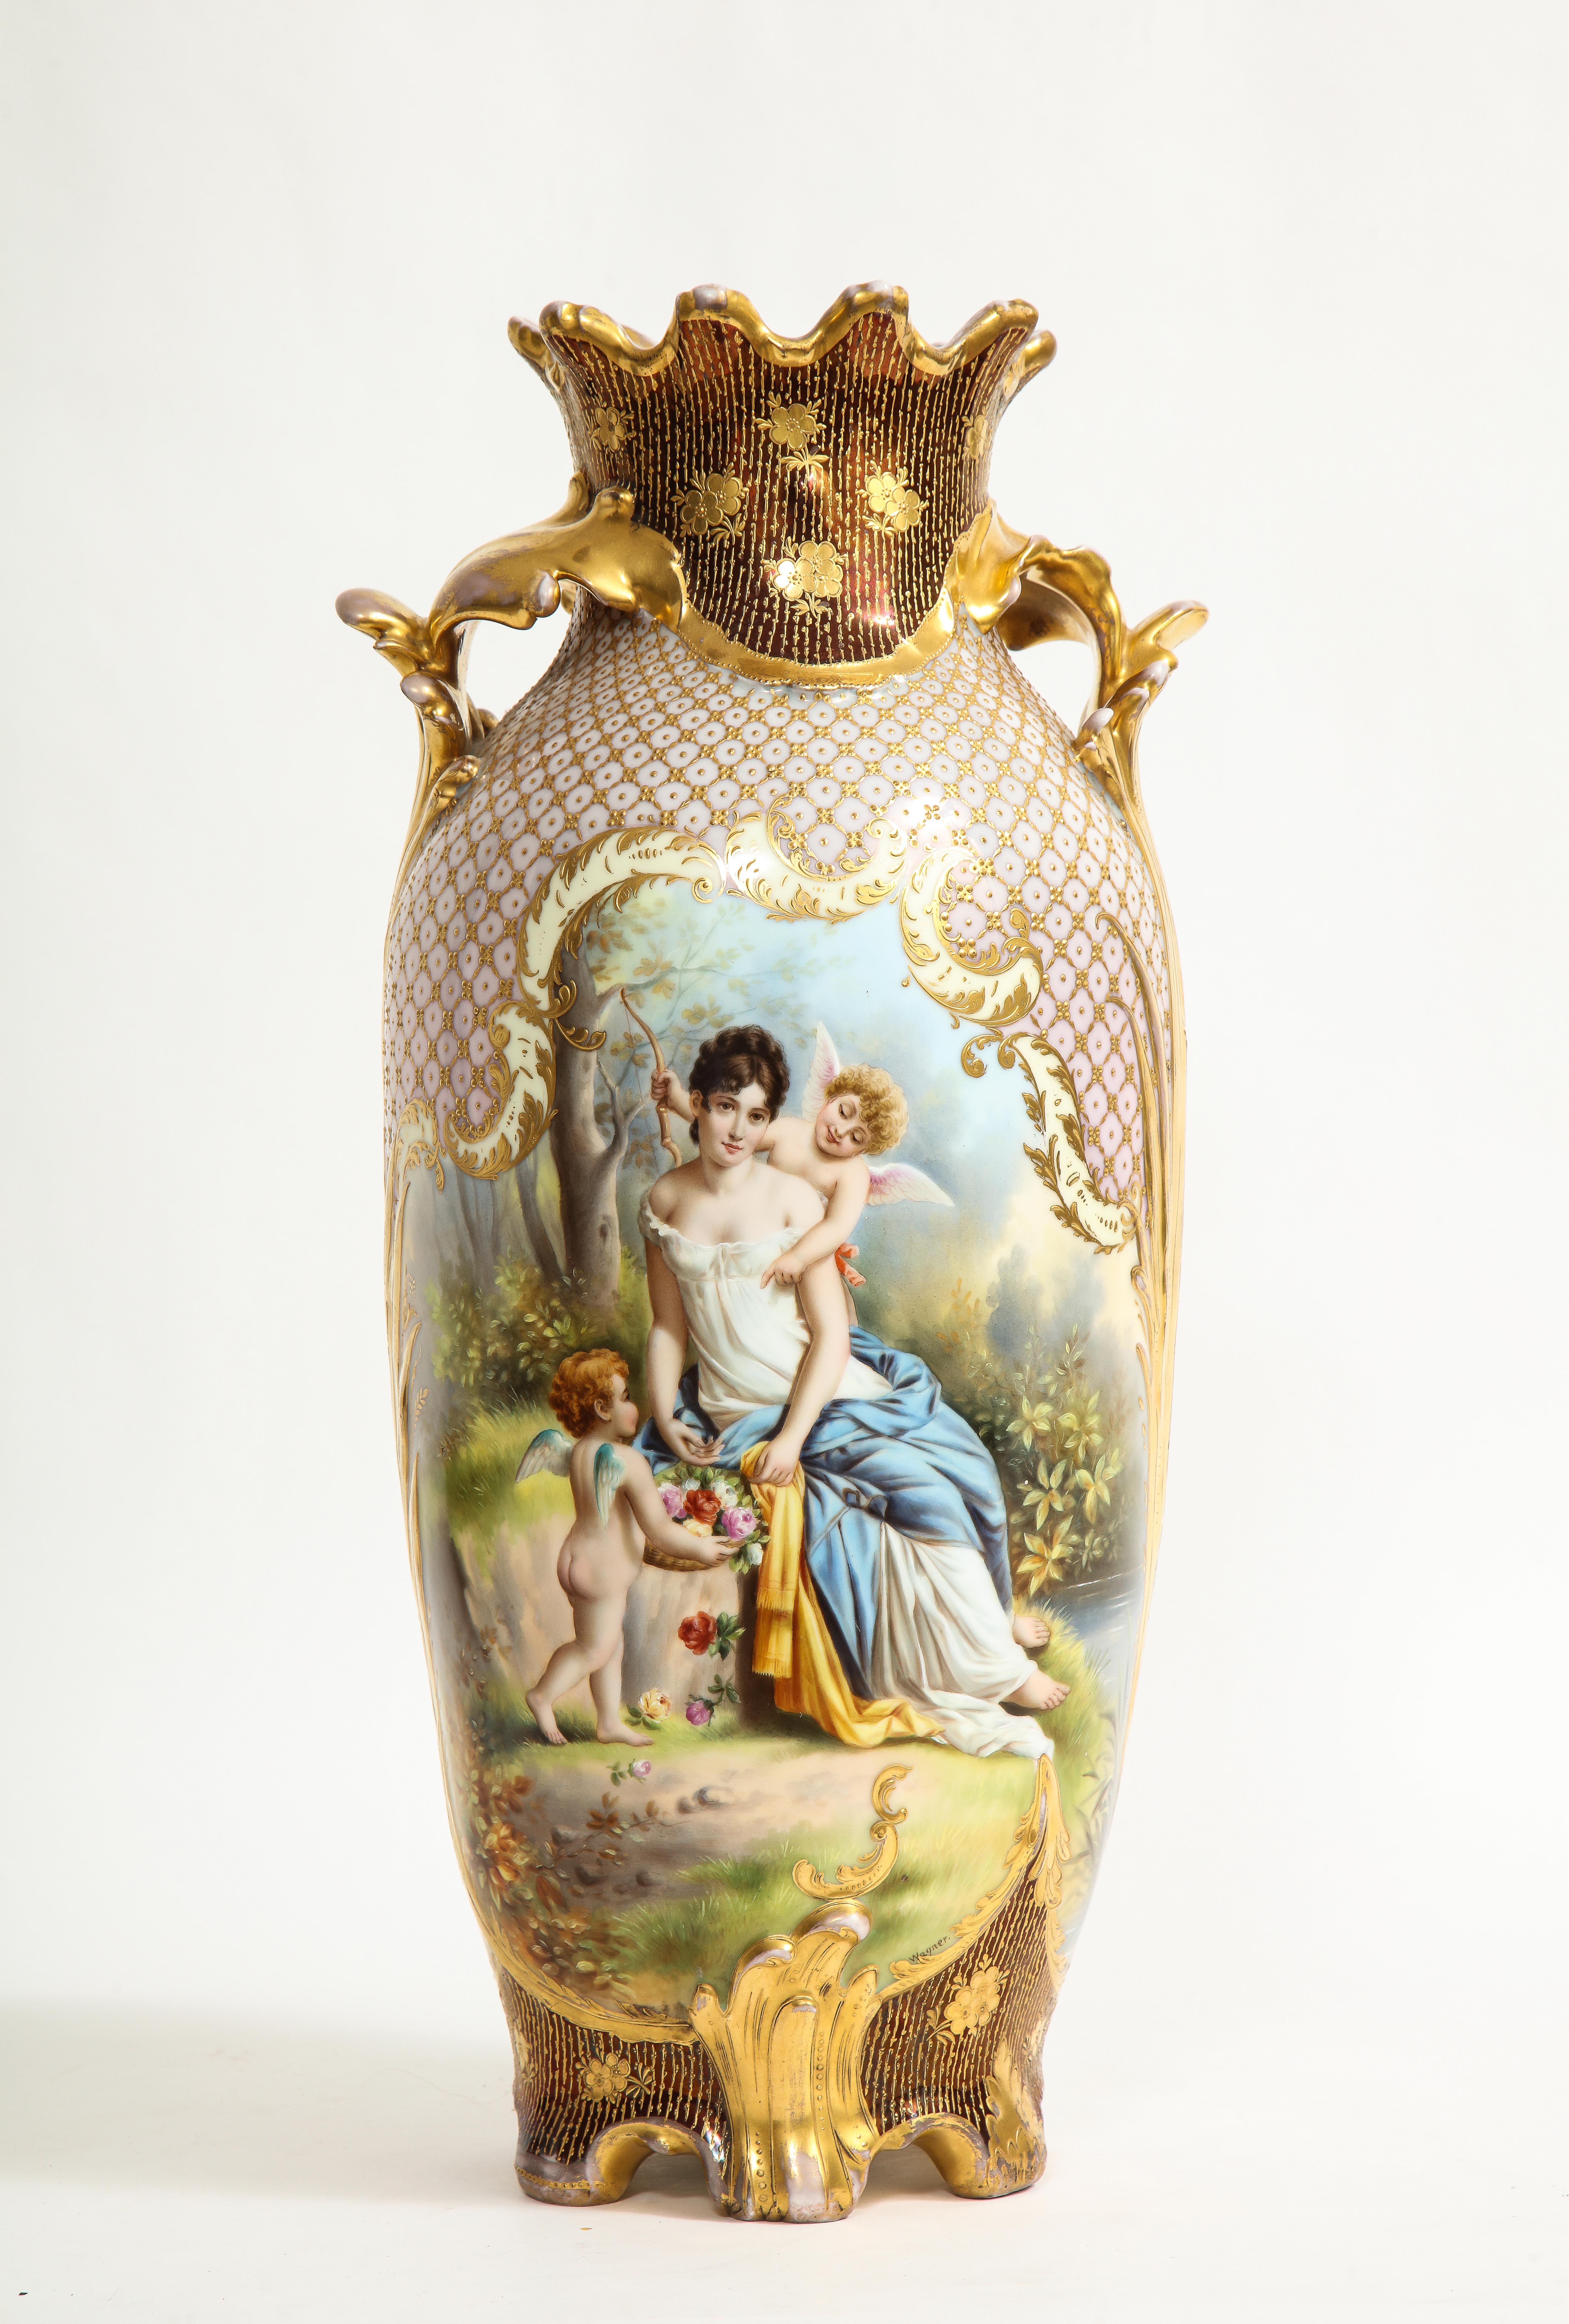 Exceptionnel vase en porcelaine royale de Vienne du XIXe siècle, à deux panneaux et à décor doré en relief 24K, signé Wagner, marqué en bleu sous glaçure avec la marque Beehive sur le fond. Ce vase est un véritable chef-d'œuvre peint à la main par